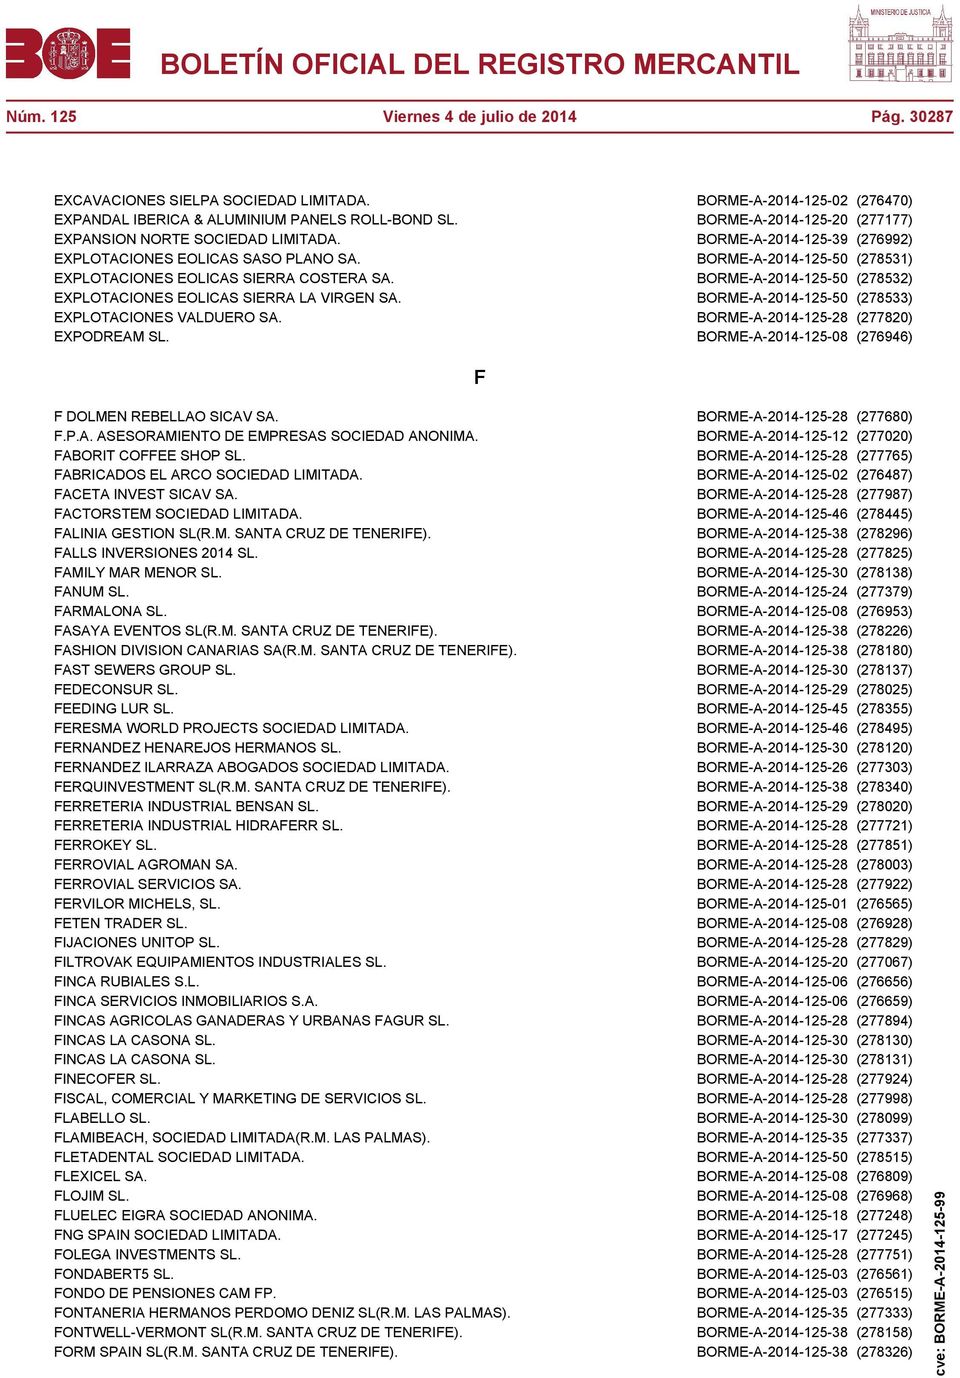 BORME-A-2014-125-50 (278532) EXPLOTACIONES EOLICAS SIERRA LA VIRGEN SA. BORME-A-2014-125-50 (278533) EXPLOTACIONES VALDUERO SA. BORME-A-2014-125-28 (277820) EXPODREAM SL.